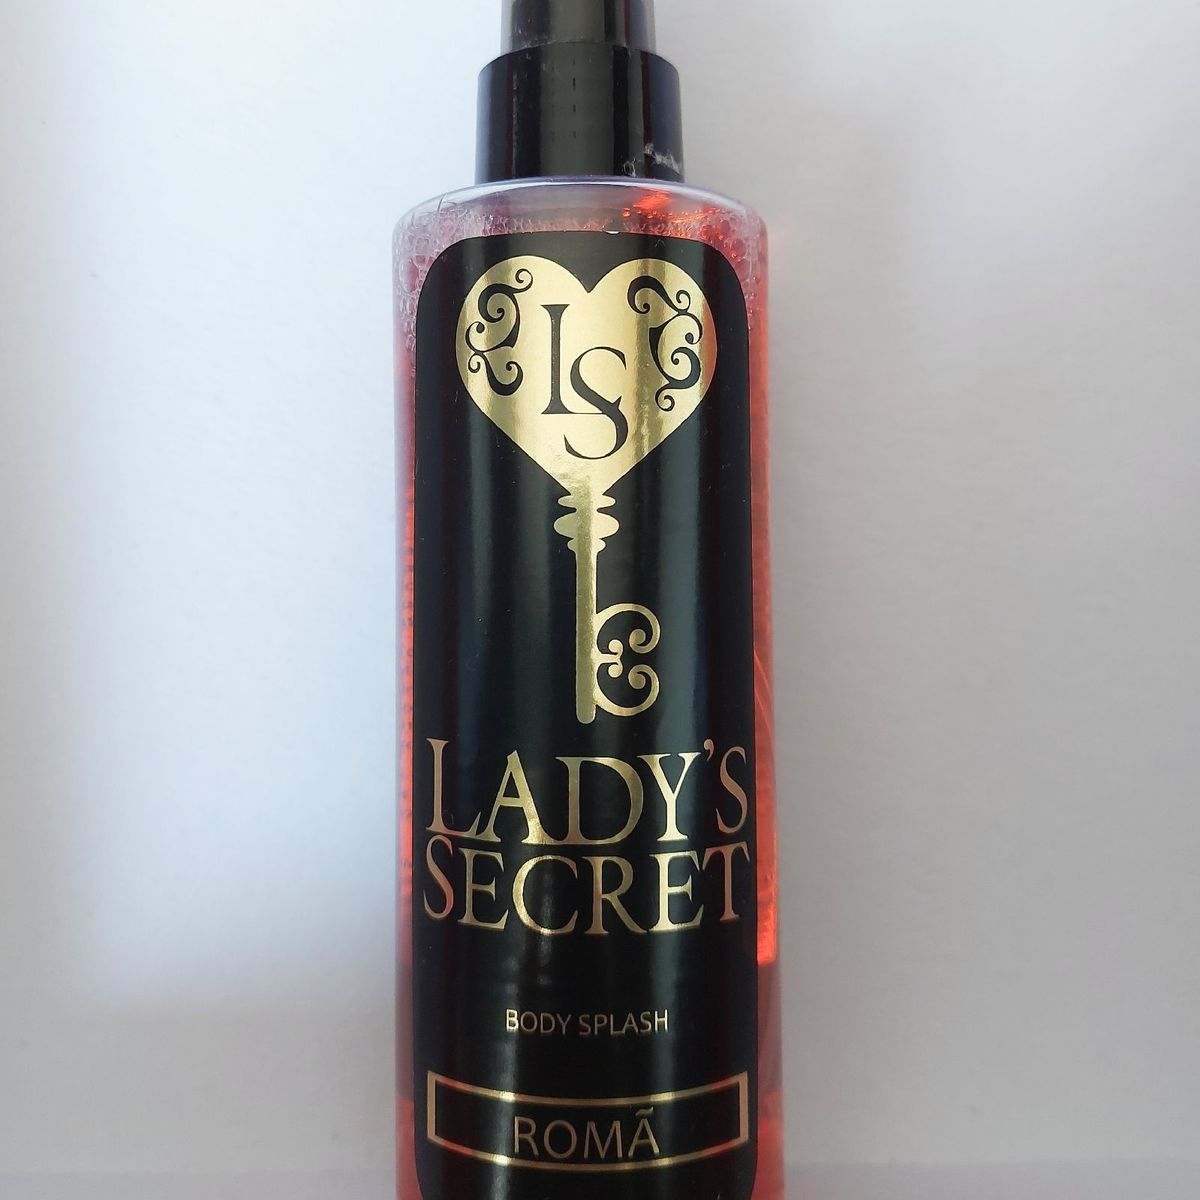 Ladies's Secret